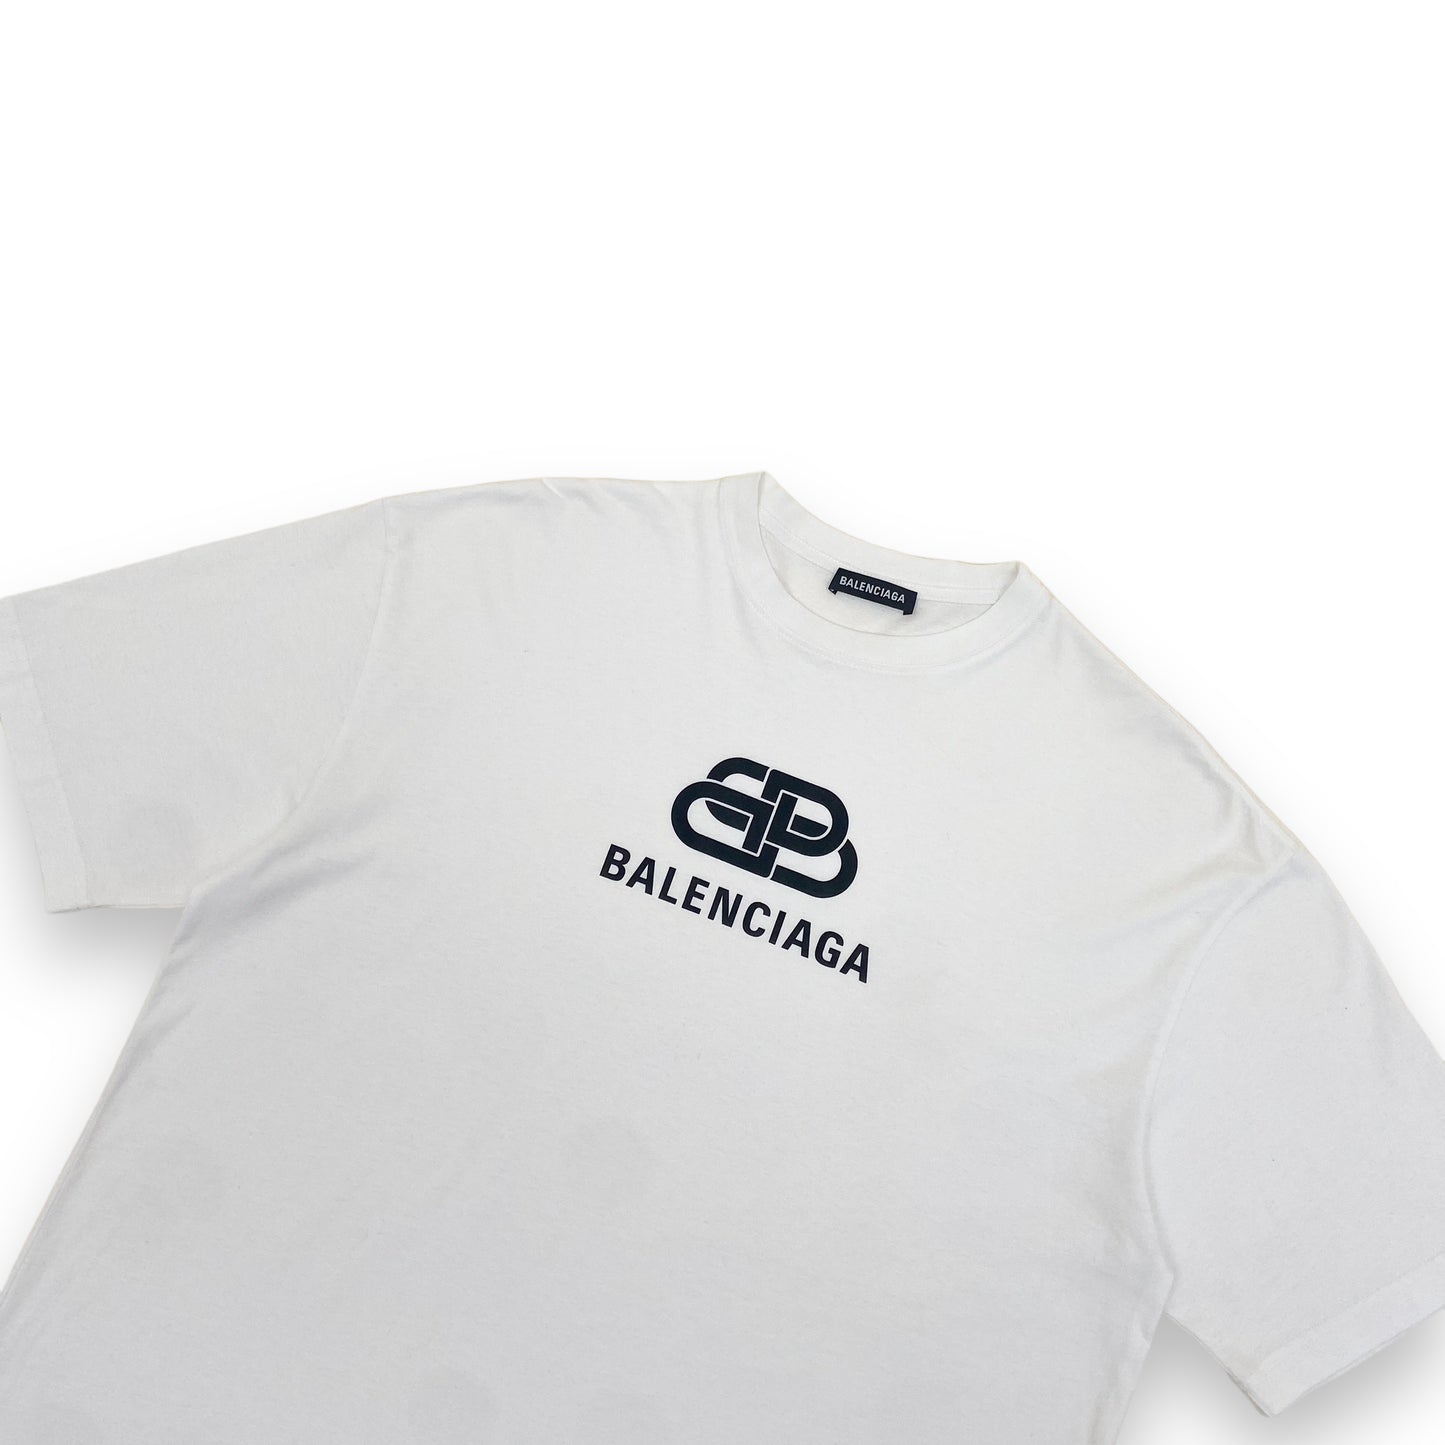 BALENCIAGA T-SHIRT WHITE L